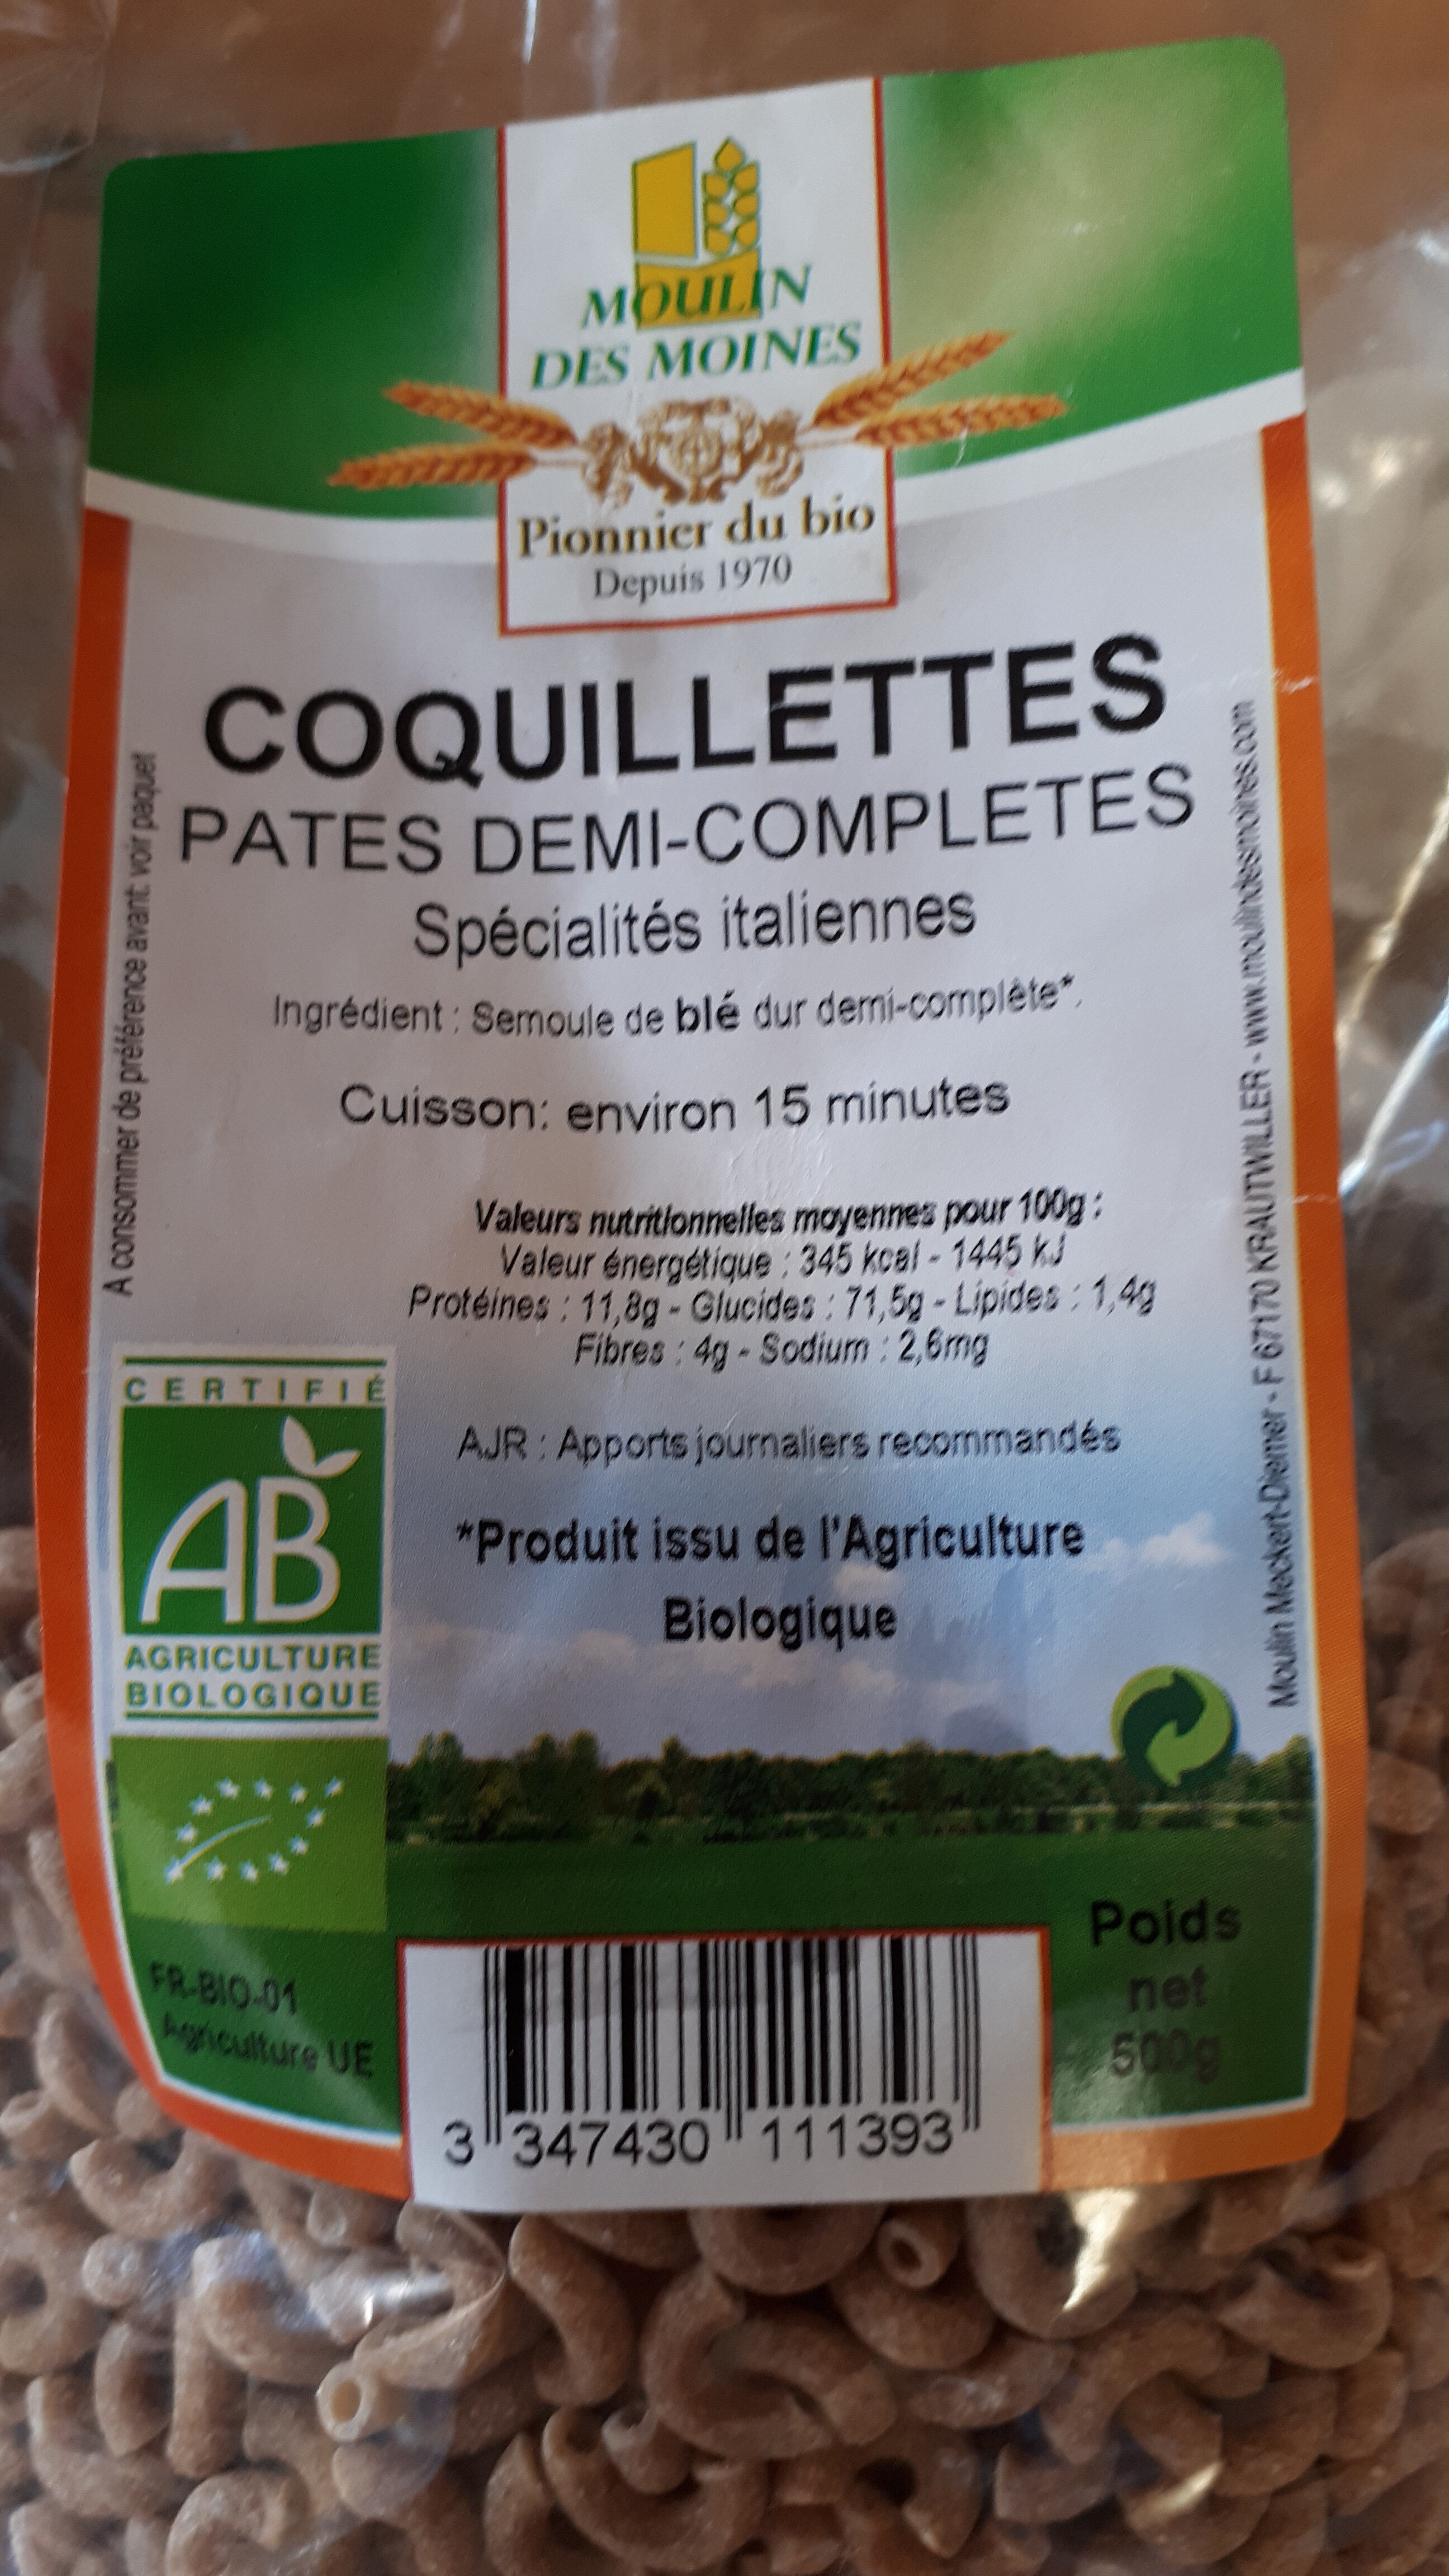 Coquillettes pâtes demi-complètes - Product - fr